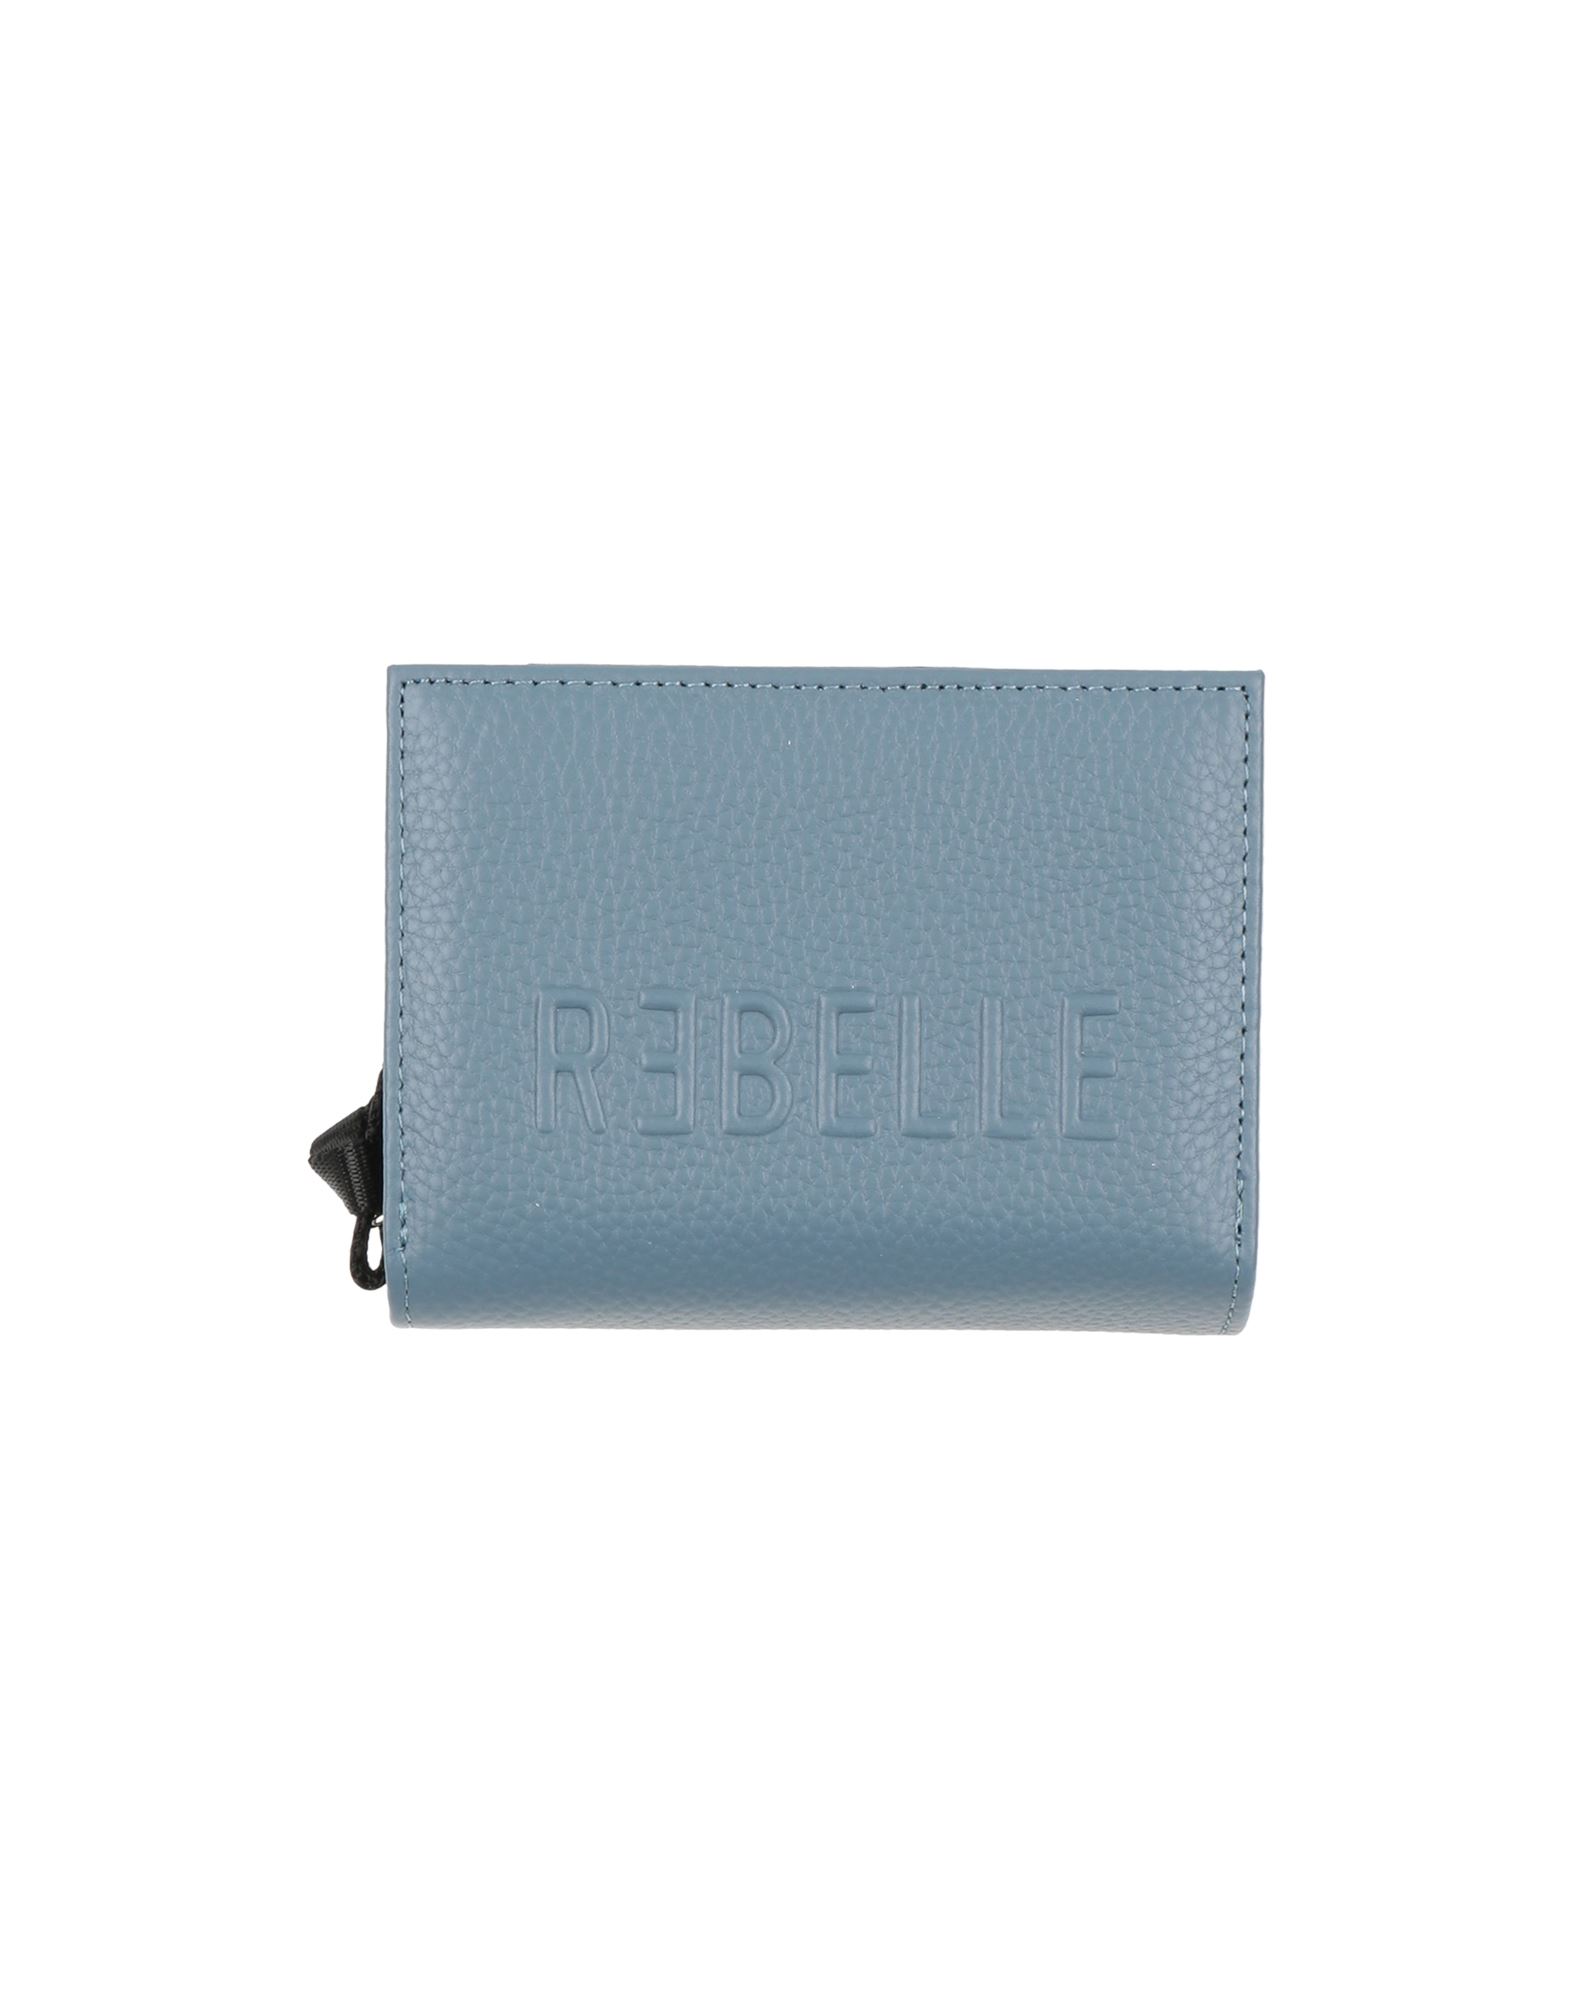 Rebelle Wallets In Pastel Blue